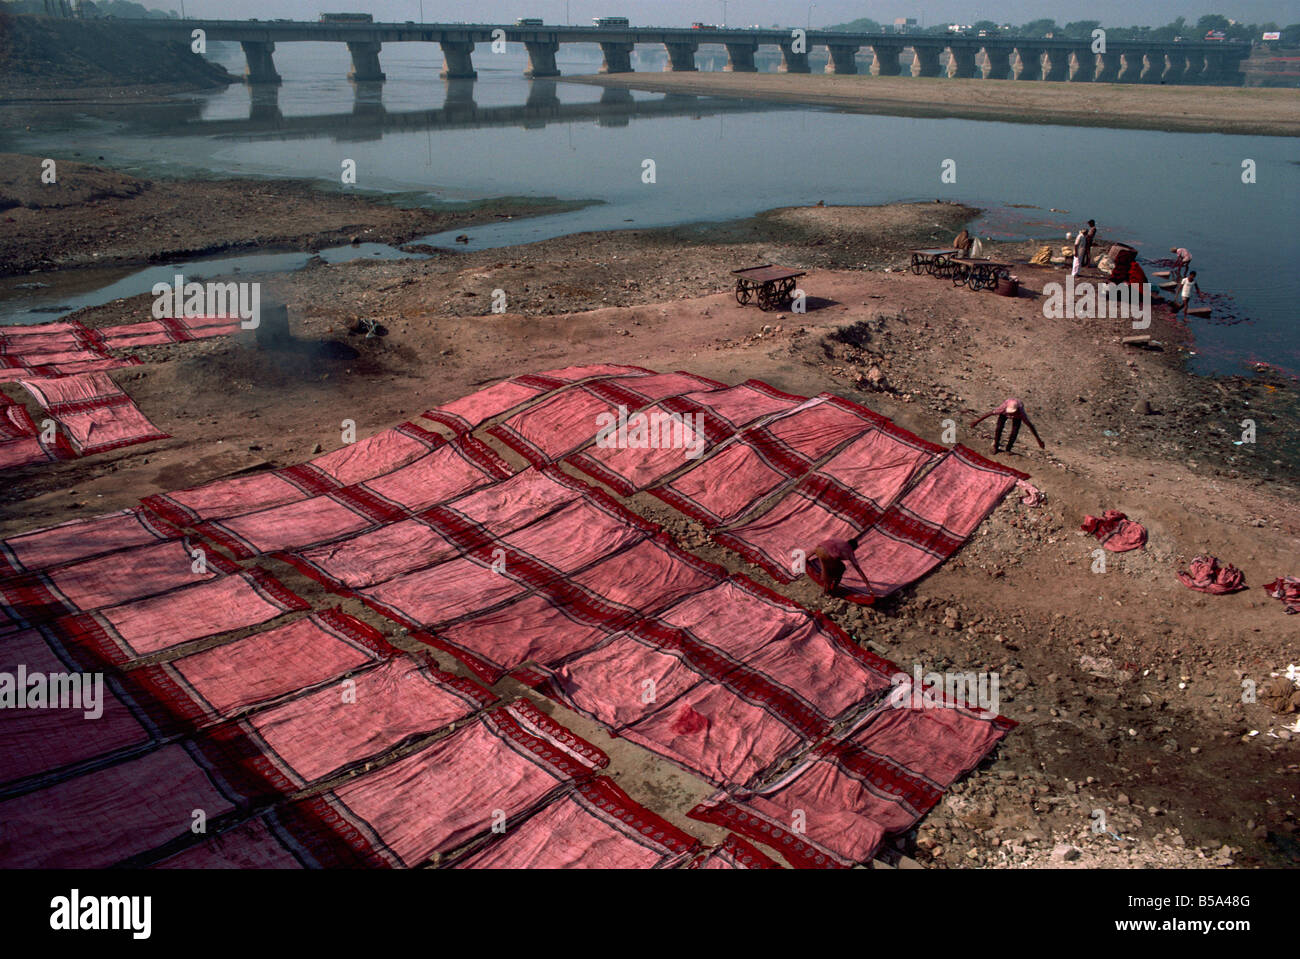 Waschen und trocknen blockieren bedruckten Textilien Ahmedabad, Gujarat Staat Indien Asien Stockfoto